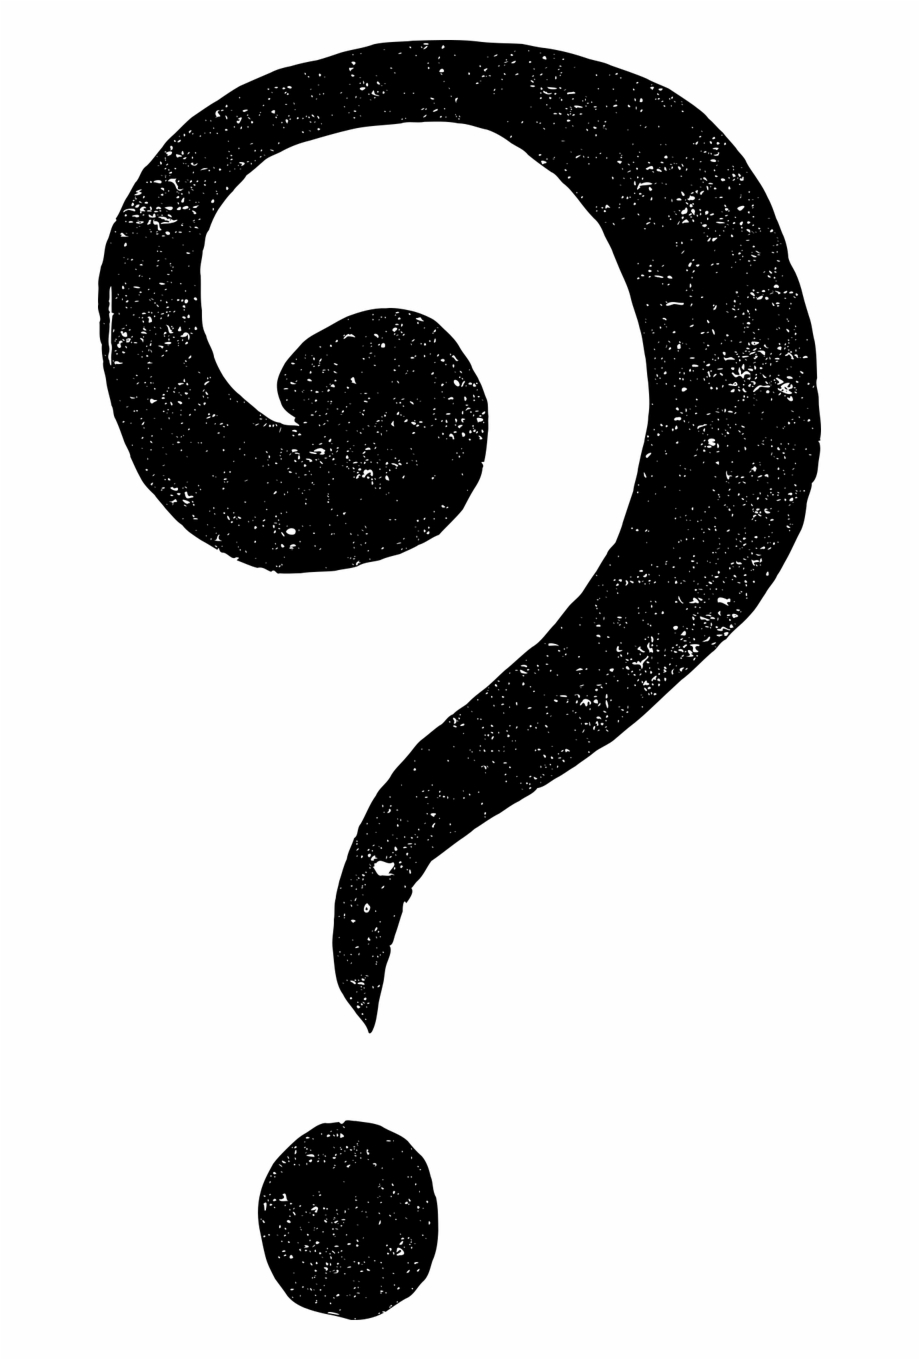 Question Question Mark Punctuation Signos De Pregunta Png